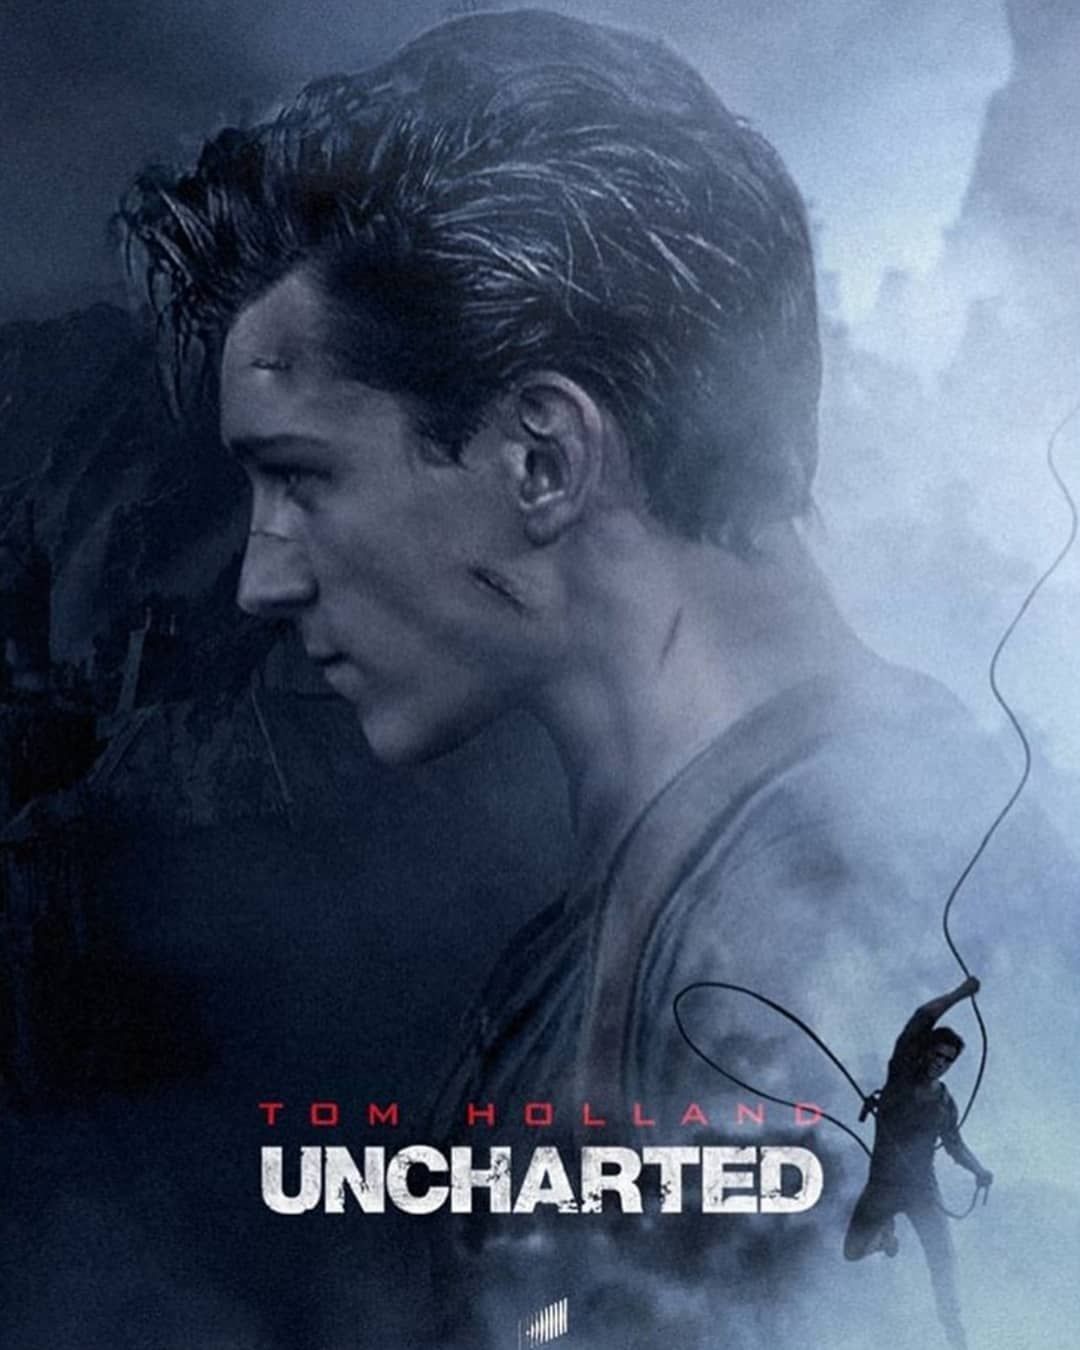 Tom Holland elogia roteiro de filme de Uncharted: “um dos melhores